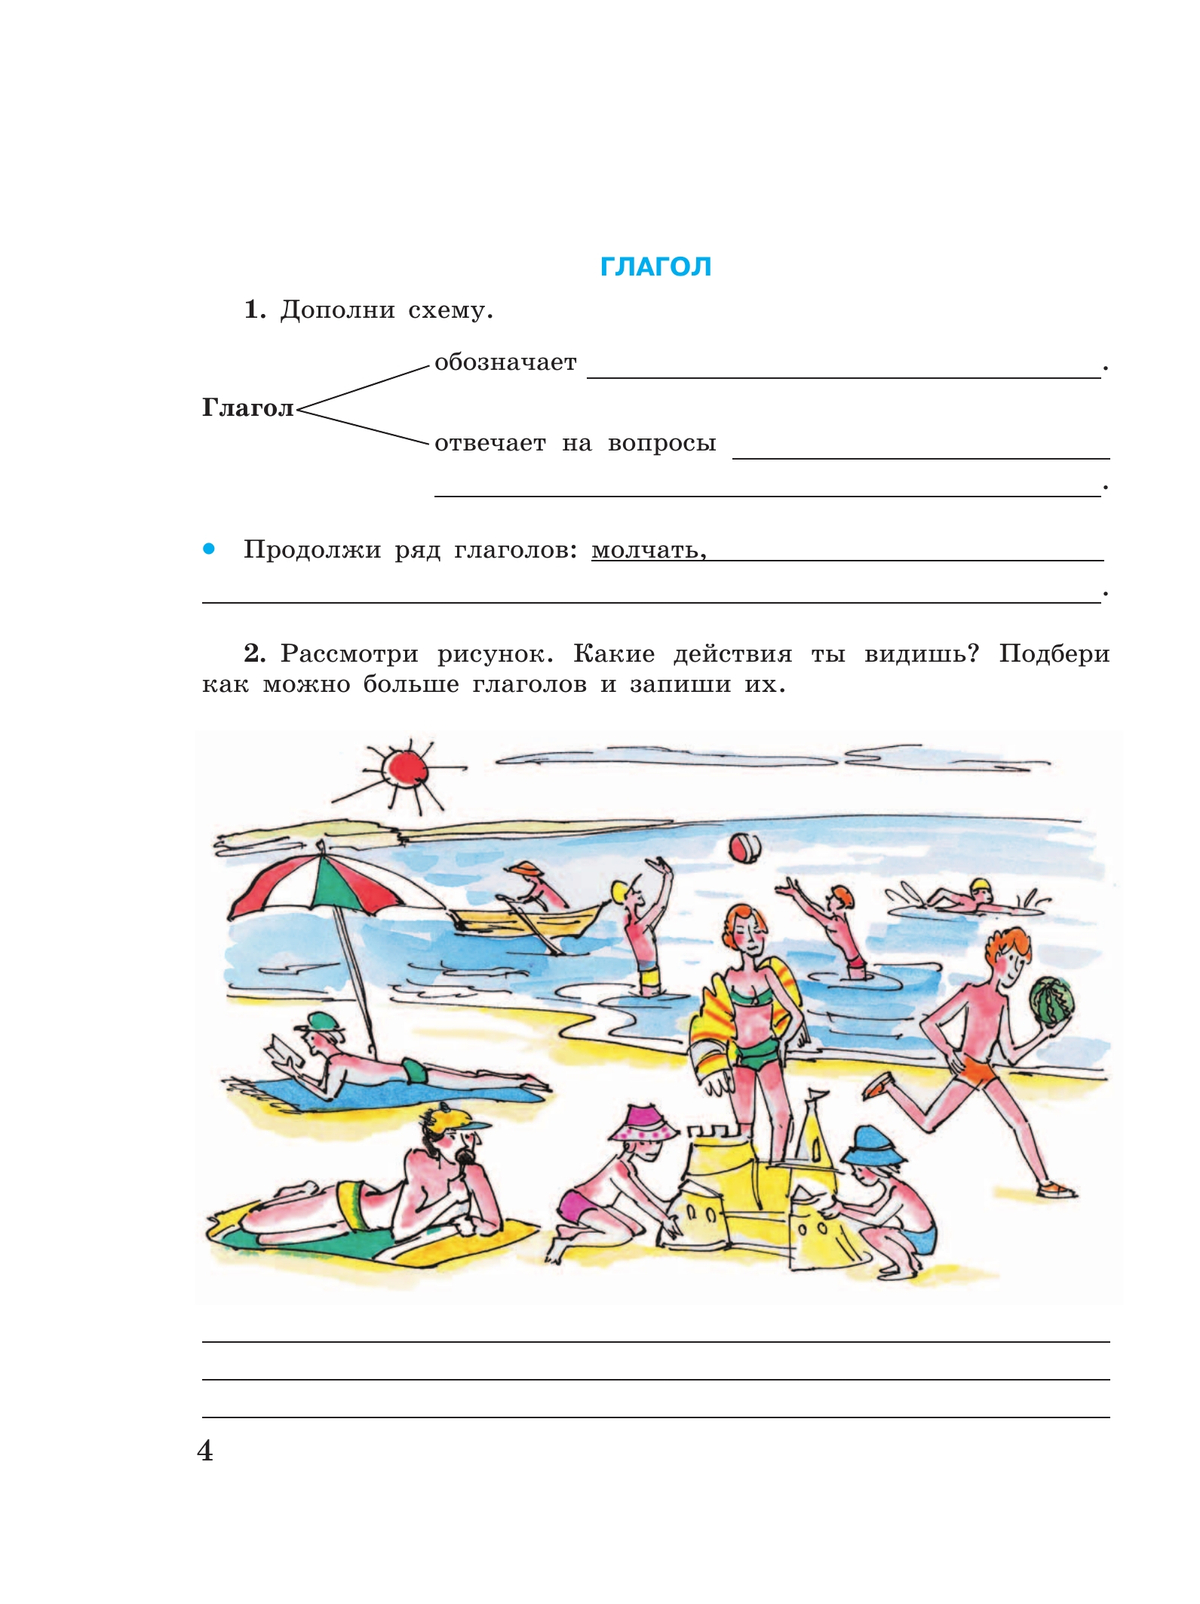 Русский язык. Глагол. 5-9 классы. Рабочая тетрадь 4 (для обучающихся с интеллектуальными нарушениями) 6